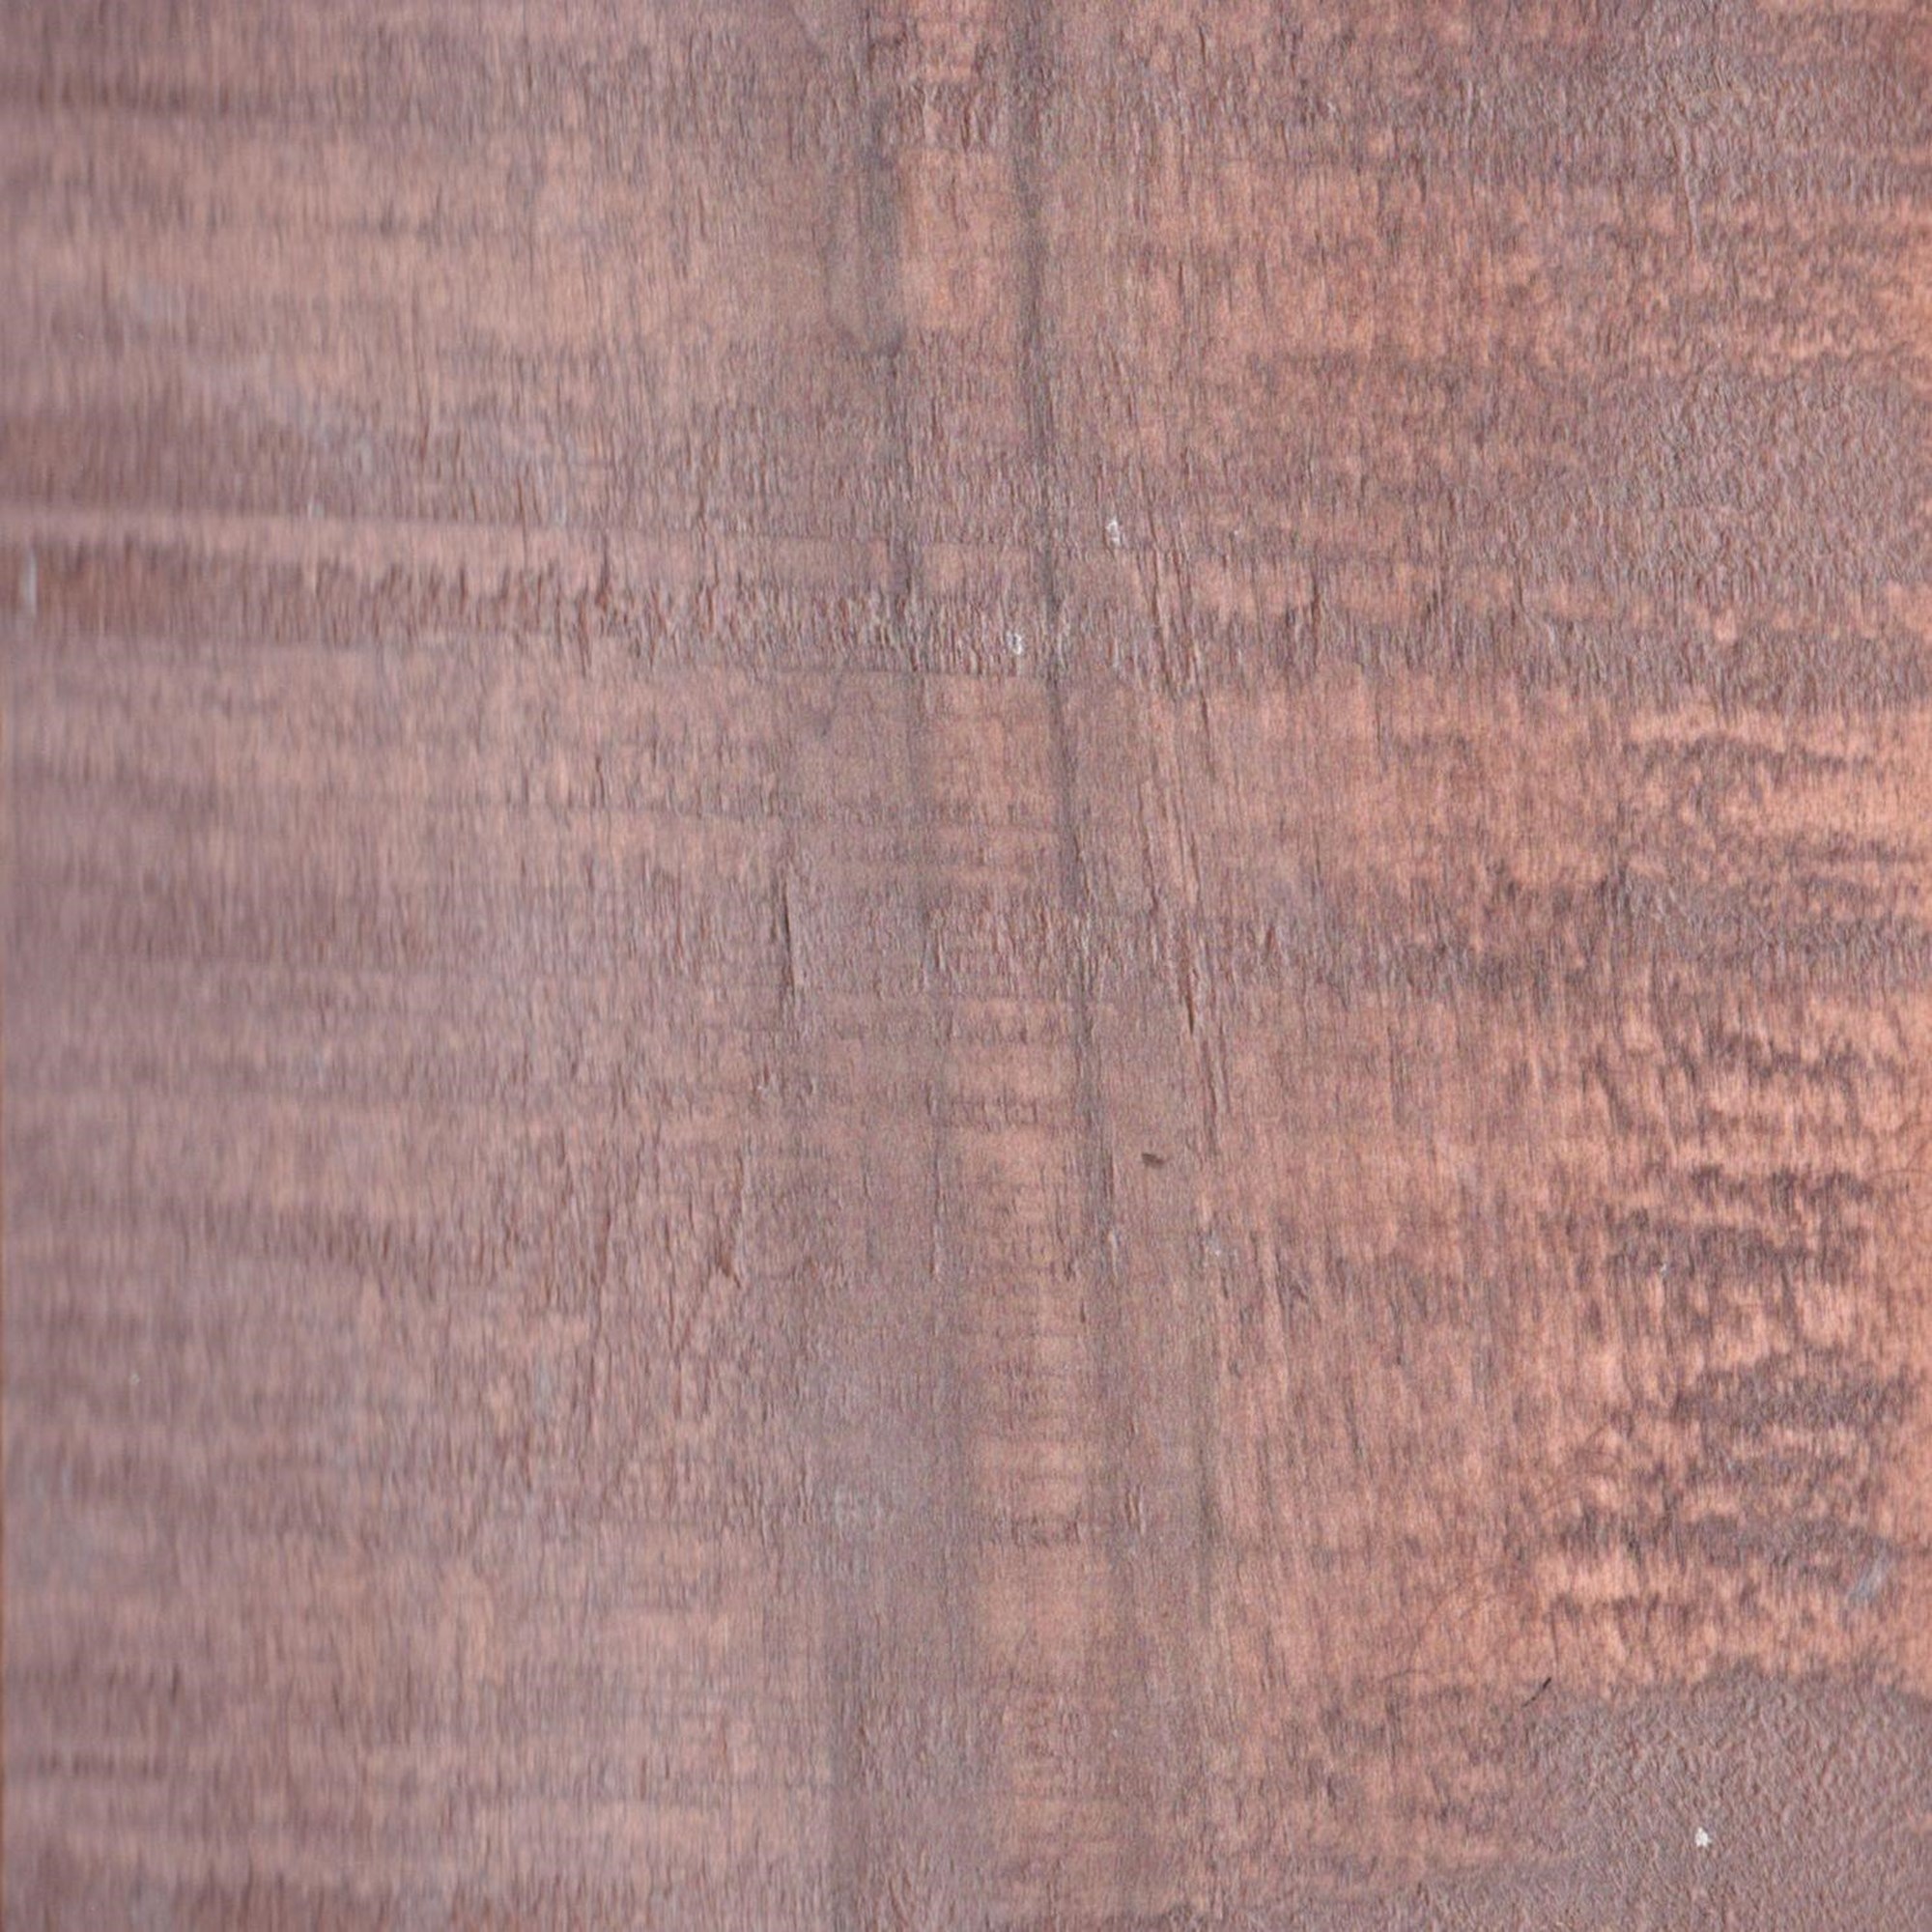 Dovetail Drawer Box- 5/8 Solid White Oak (Quarter Sawn) Hardwood